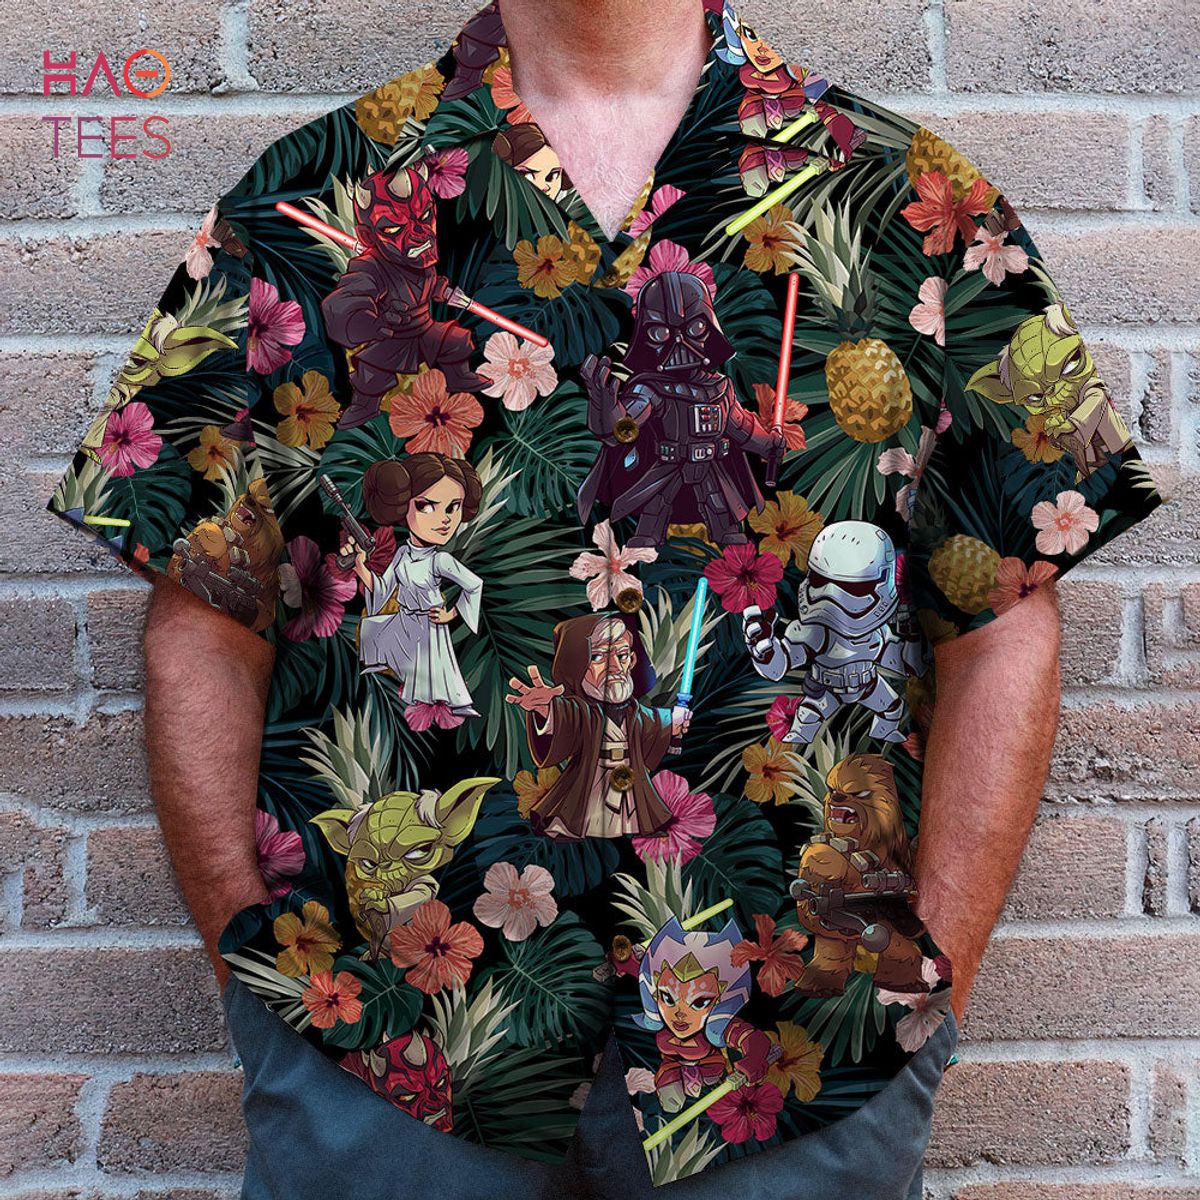 BEST Summer Flower Pattern Hawaiian Shirt -